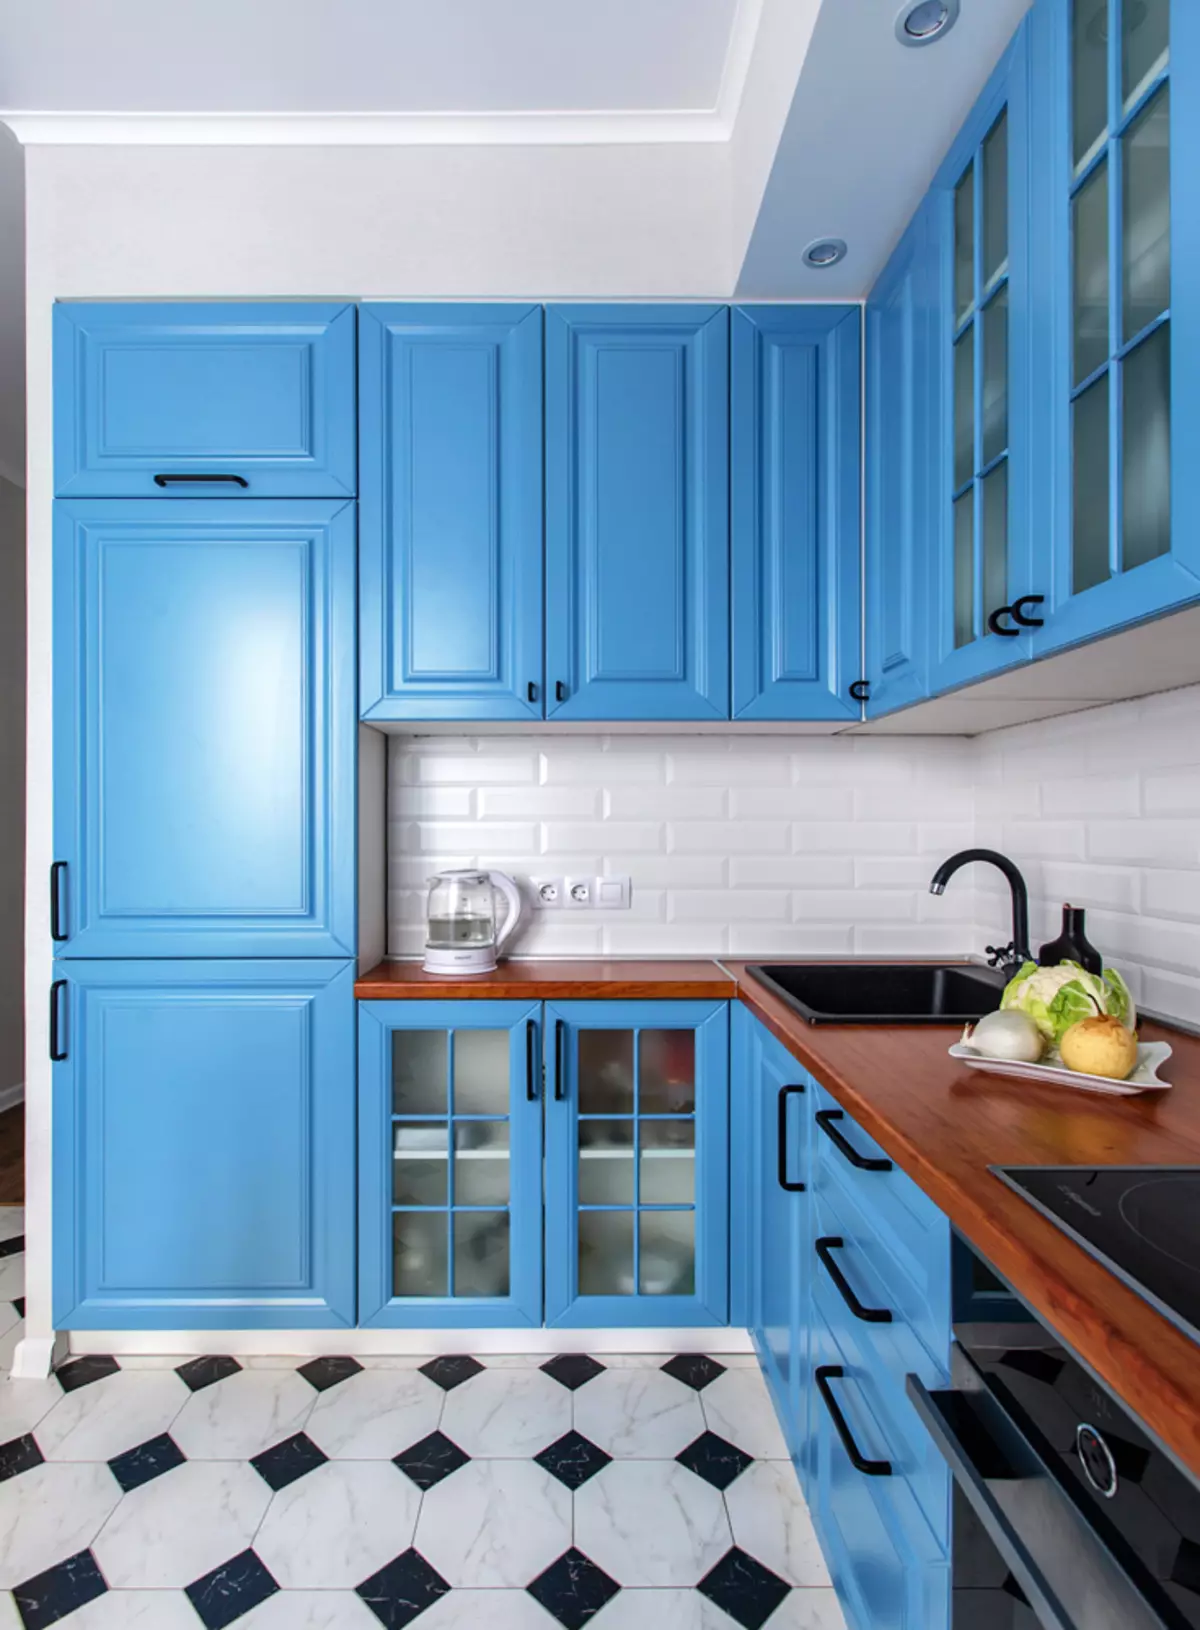 Bucătărie albastră (82 fotografii): Ce culori sunt combinate în interiorul unui set de bucătărie albastră? Design de bucătărie în tonuri albastre ușoare și întunecate 9555_69